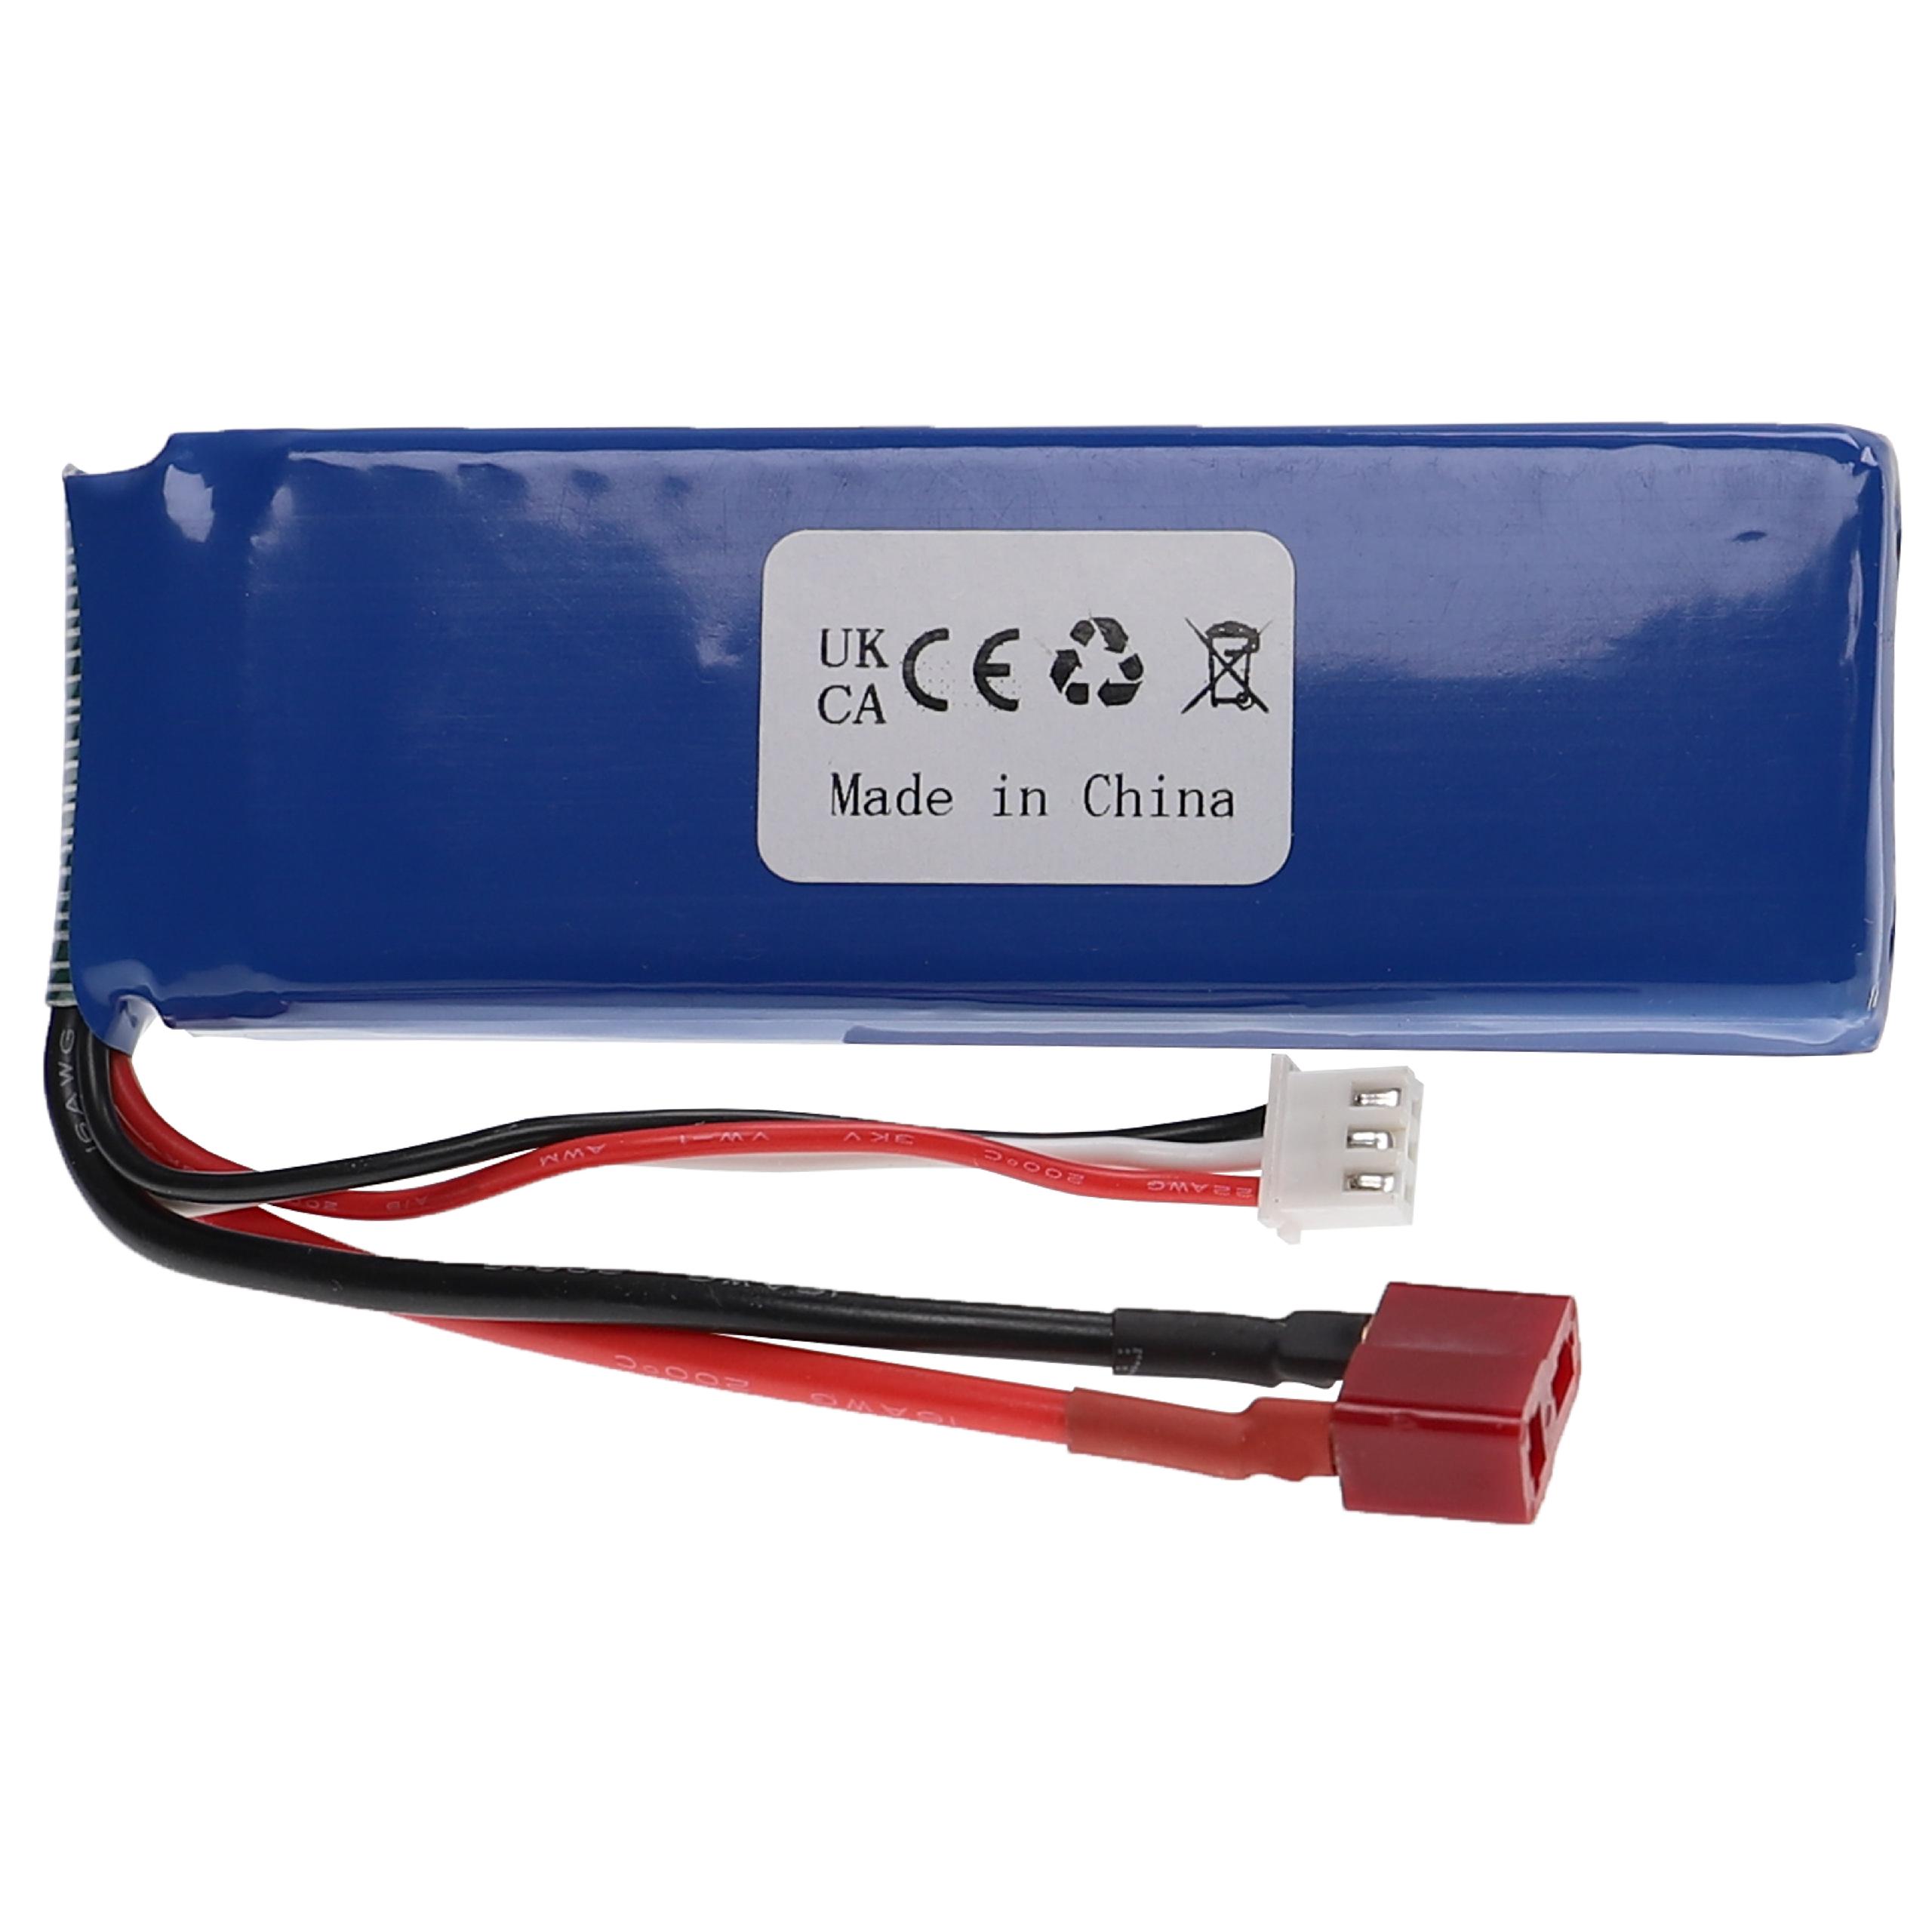 Akumulator do modeli zdalnie sterowanych RC - 2200 mAh 7,4 V LiPo, T-wtyczka AWG16